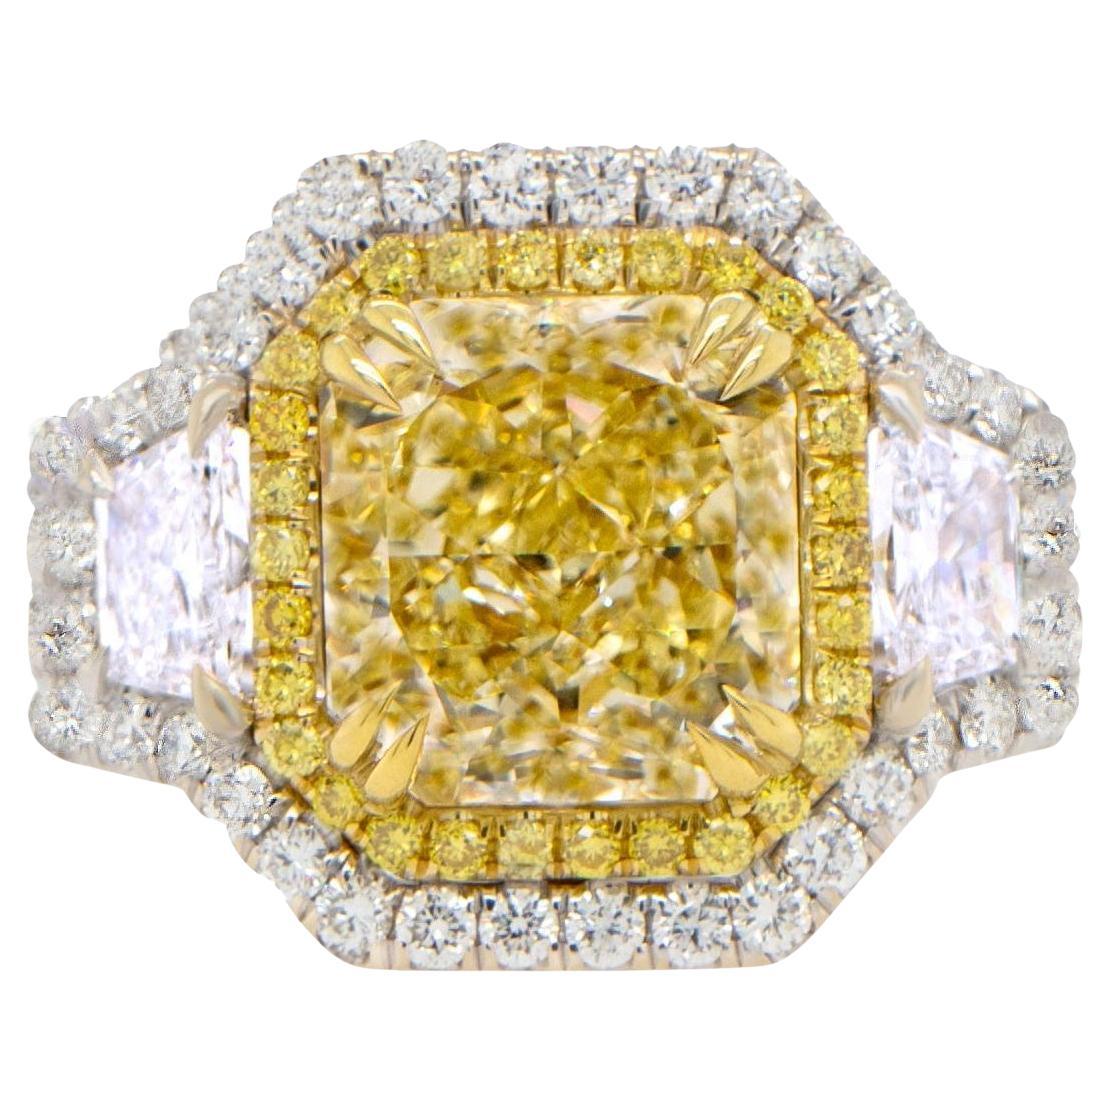 Importante bague en or 18 carats avec diamant jaune fantaisie naturel certifié GIA de 5,23 carats